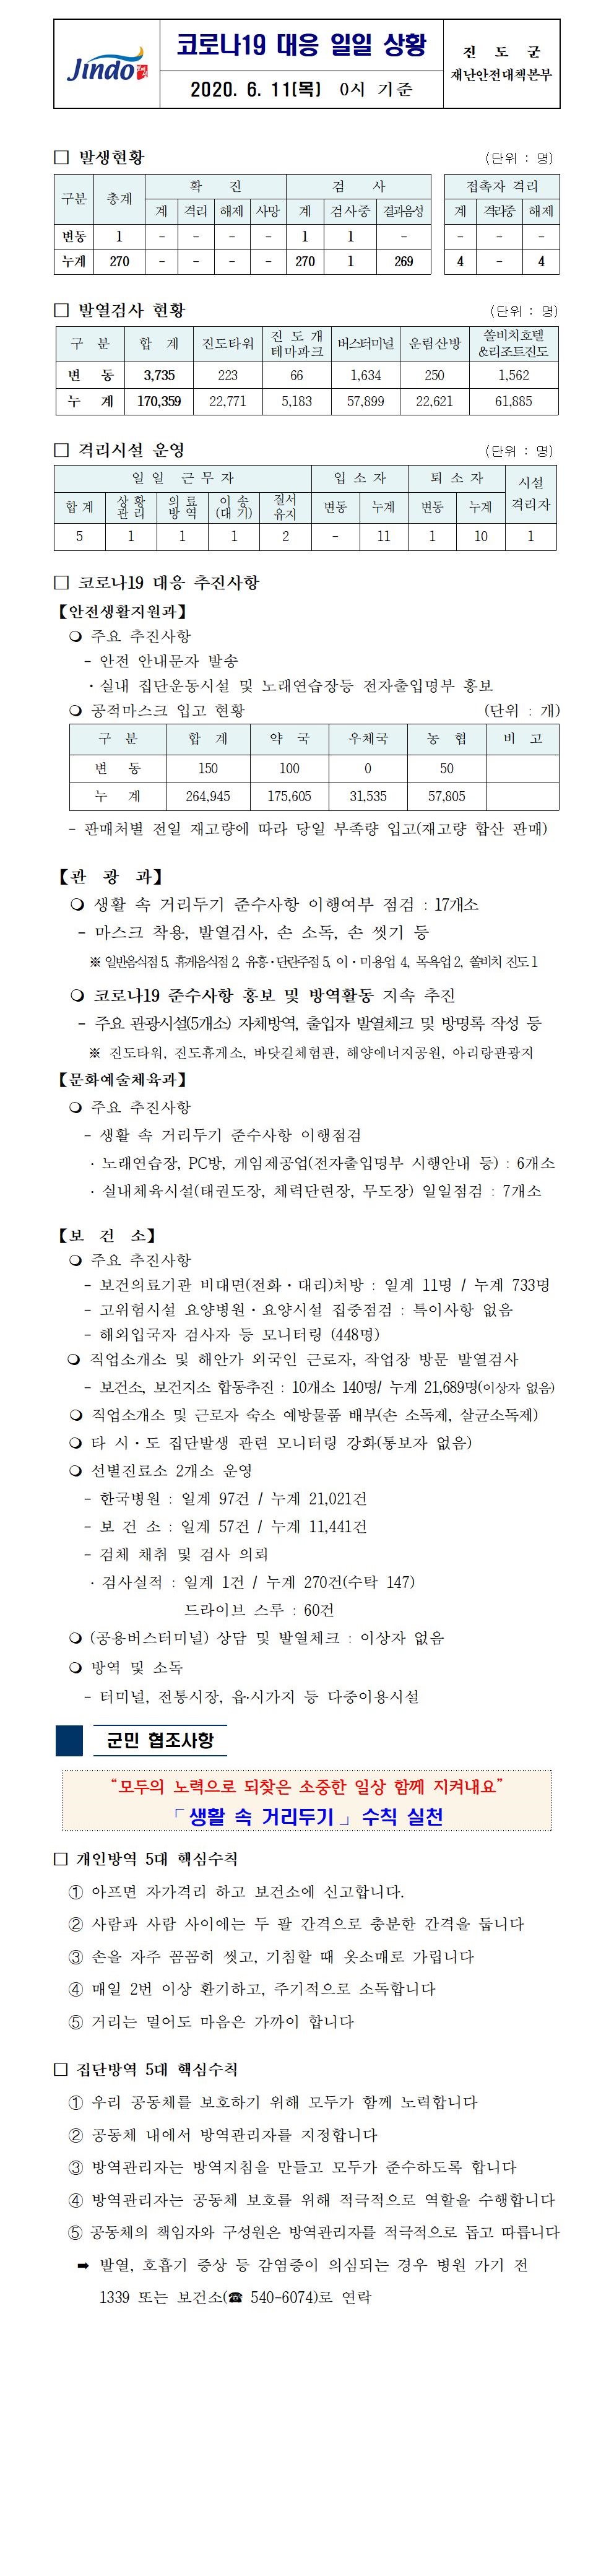 코로나19대응 일일 상황 보고(6월 11일 0시 기준) 첨부#1